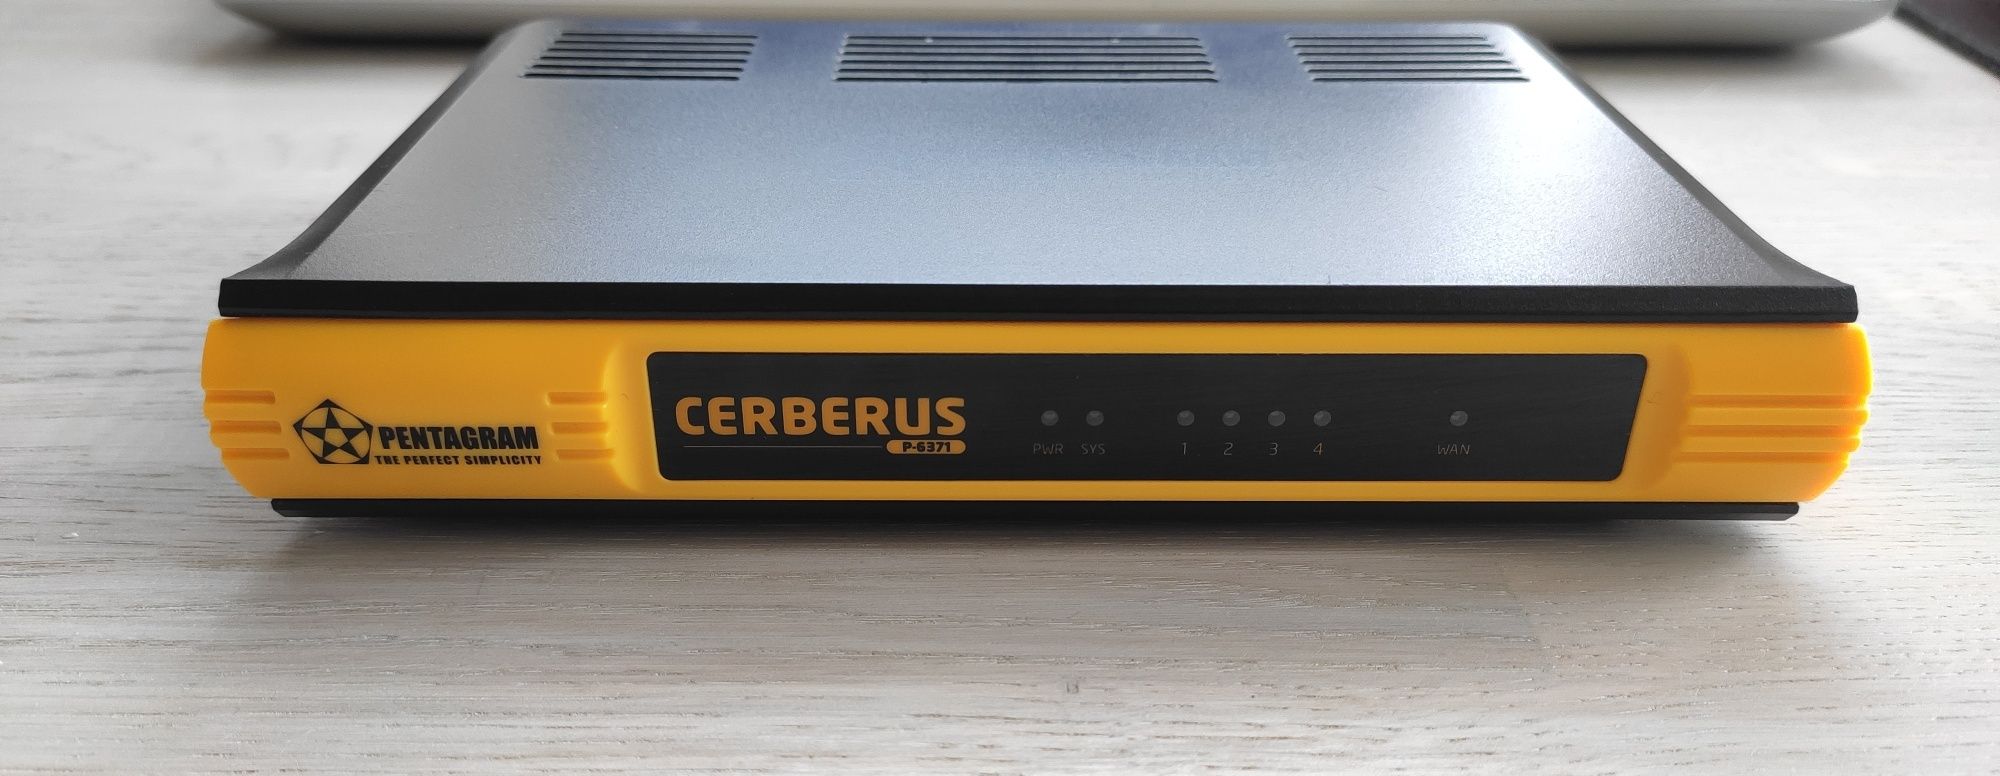 Router Pentagram Cerberus P-6371